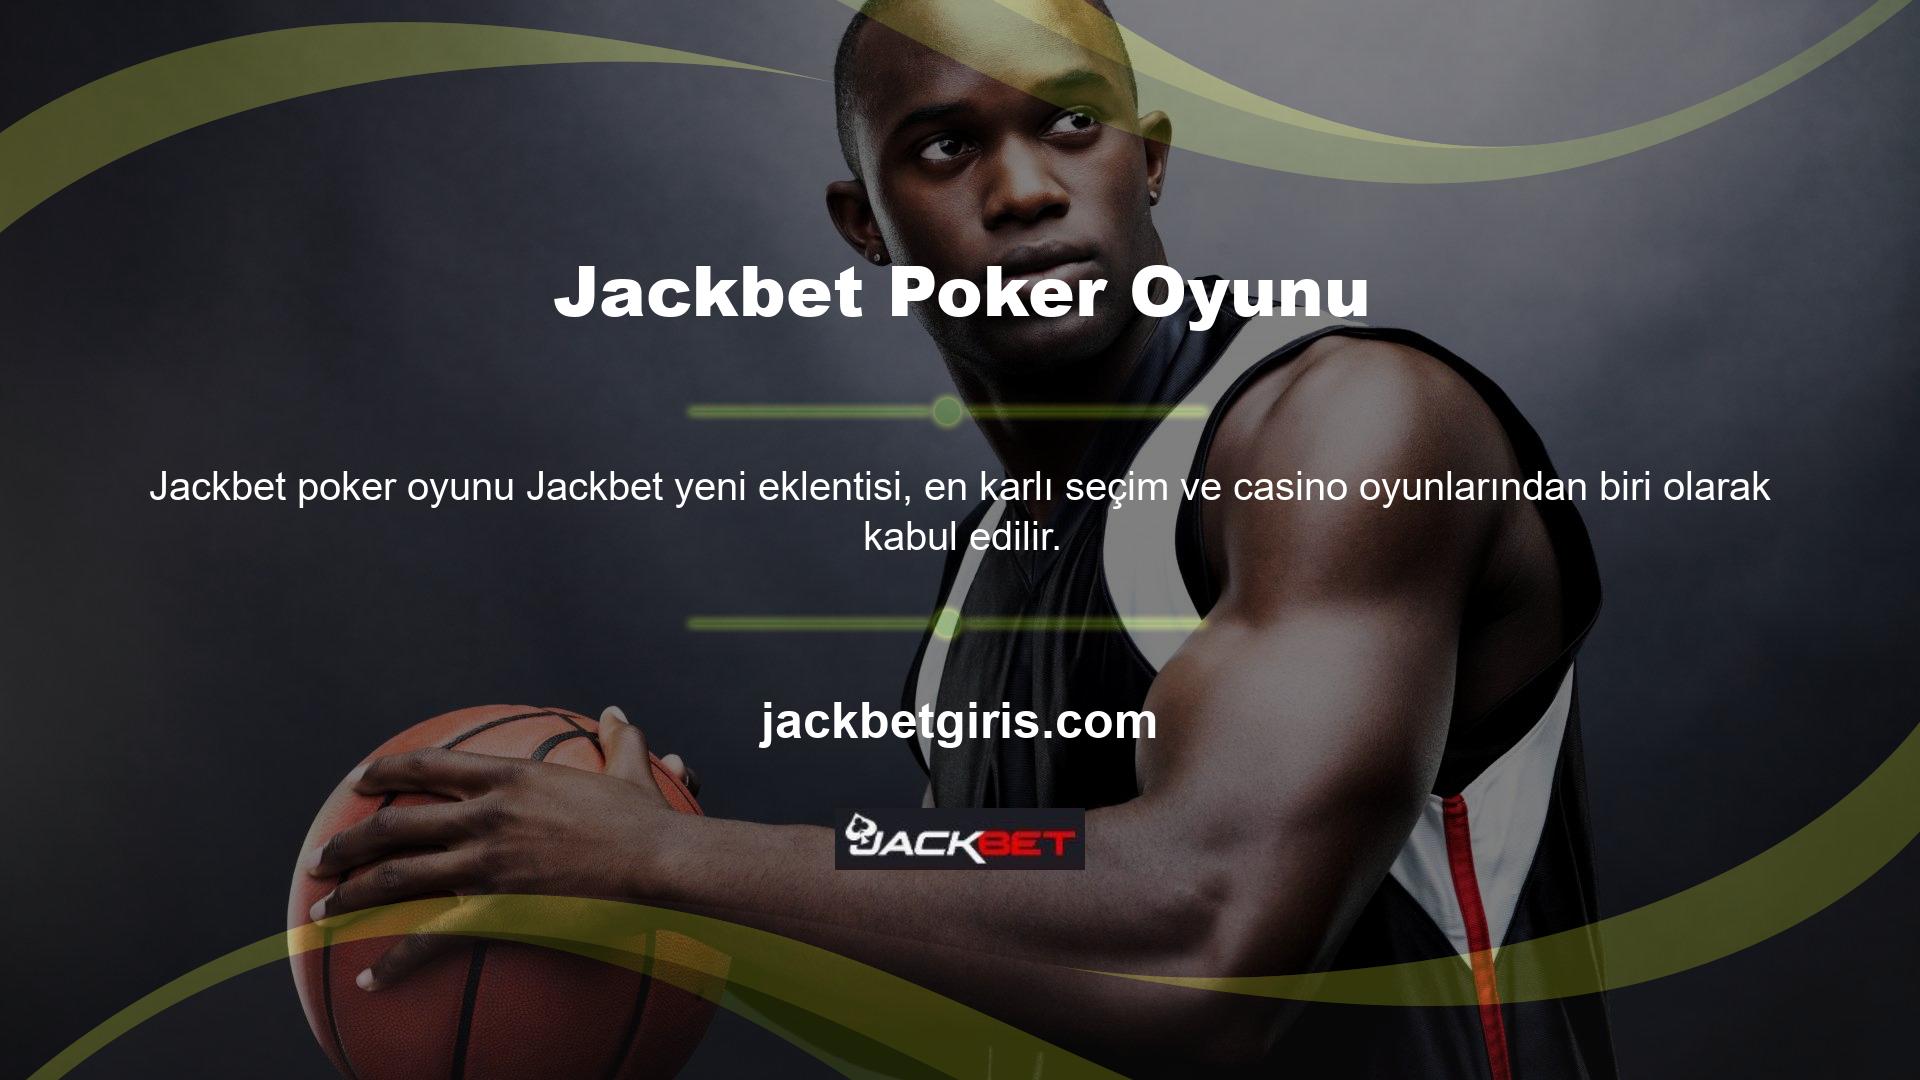 Bu bağlamda bahisçiler Jackbet Games bahis sitesi üzerinden poker oyunlarına erişim sağlamakta ve önemli ödüller kazanmaya çalışmaktadır